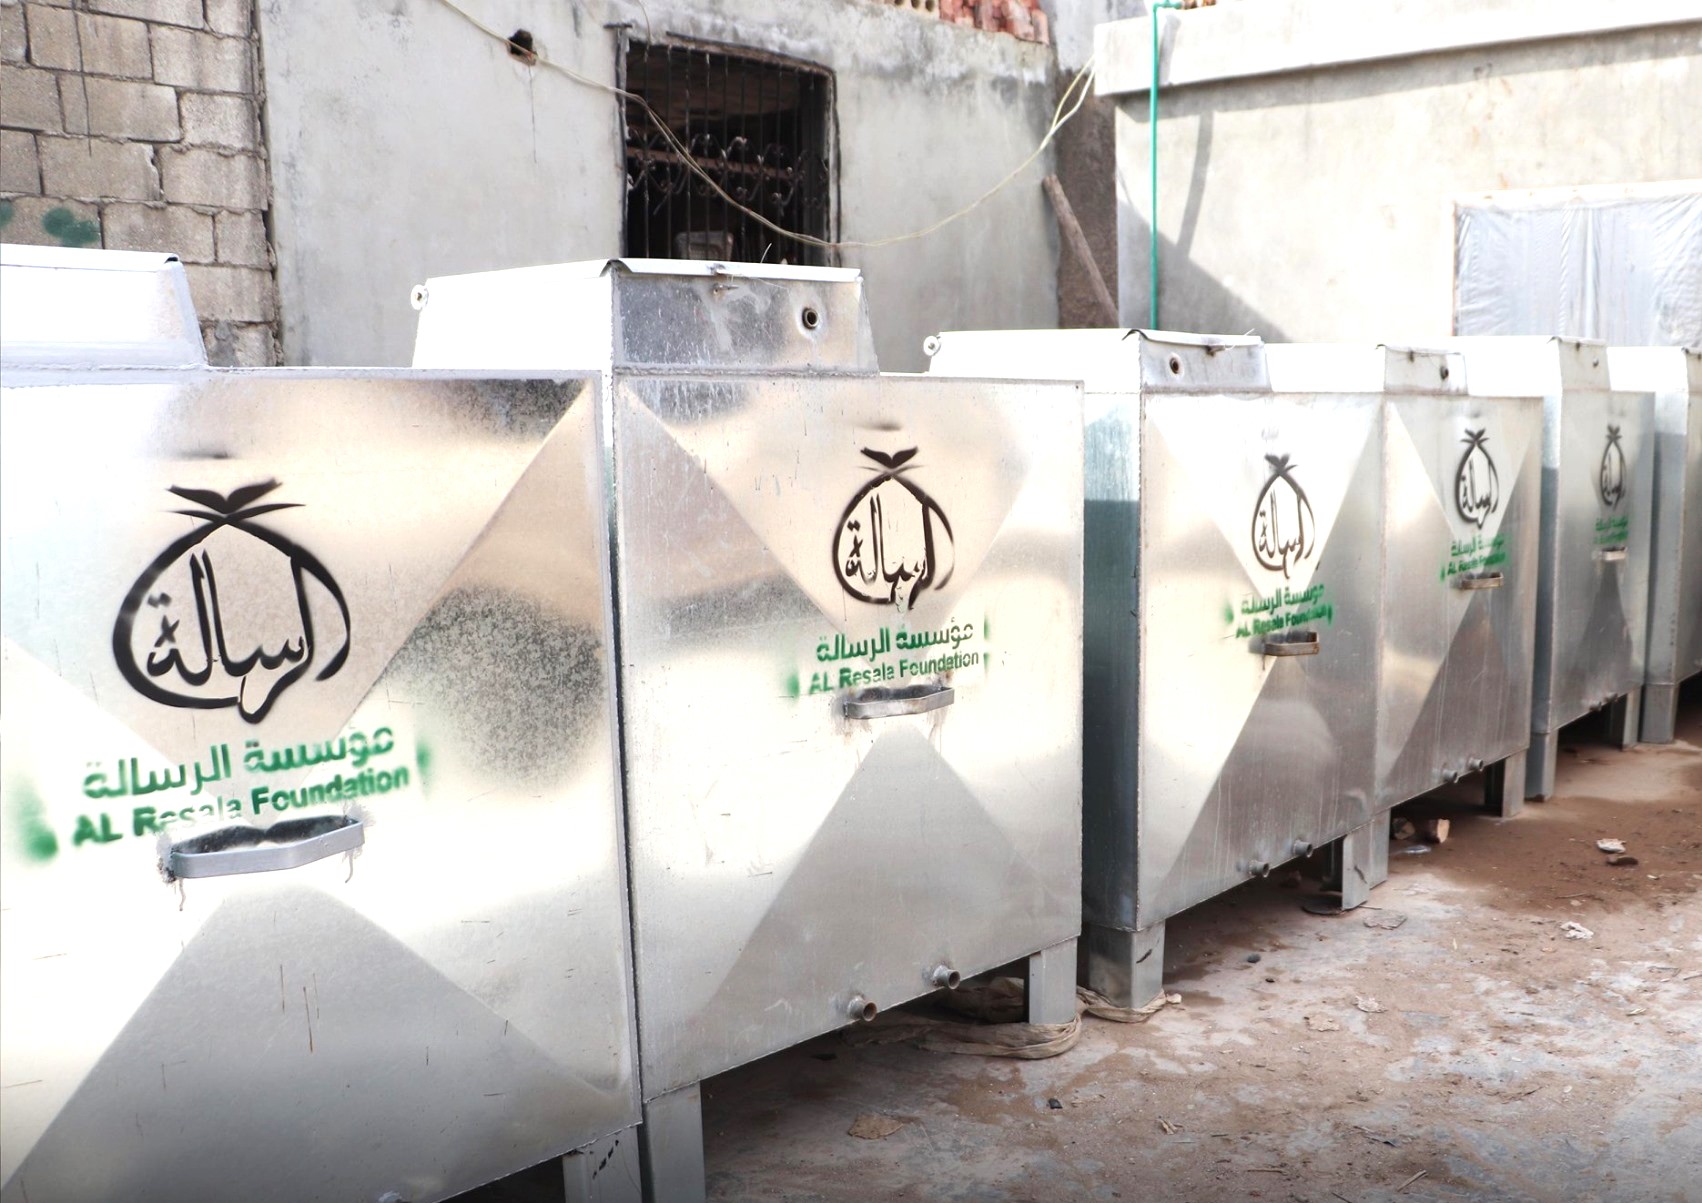 تحسين الوضع من خلال تقديم المساعدة للنازحين المتضررين من النزاع في خدمات المياه والصرف الصحي في مخيمات شمال غرب إدلب في سوريا